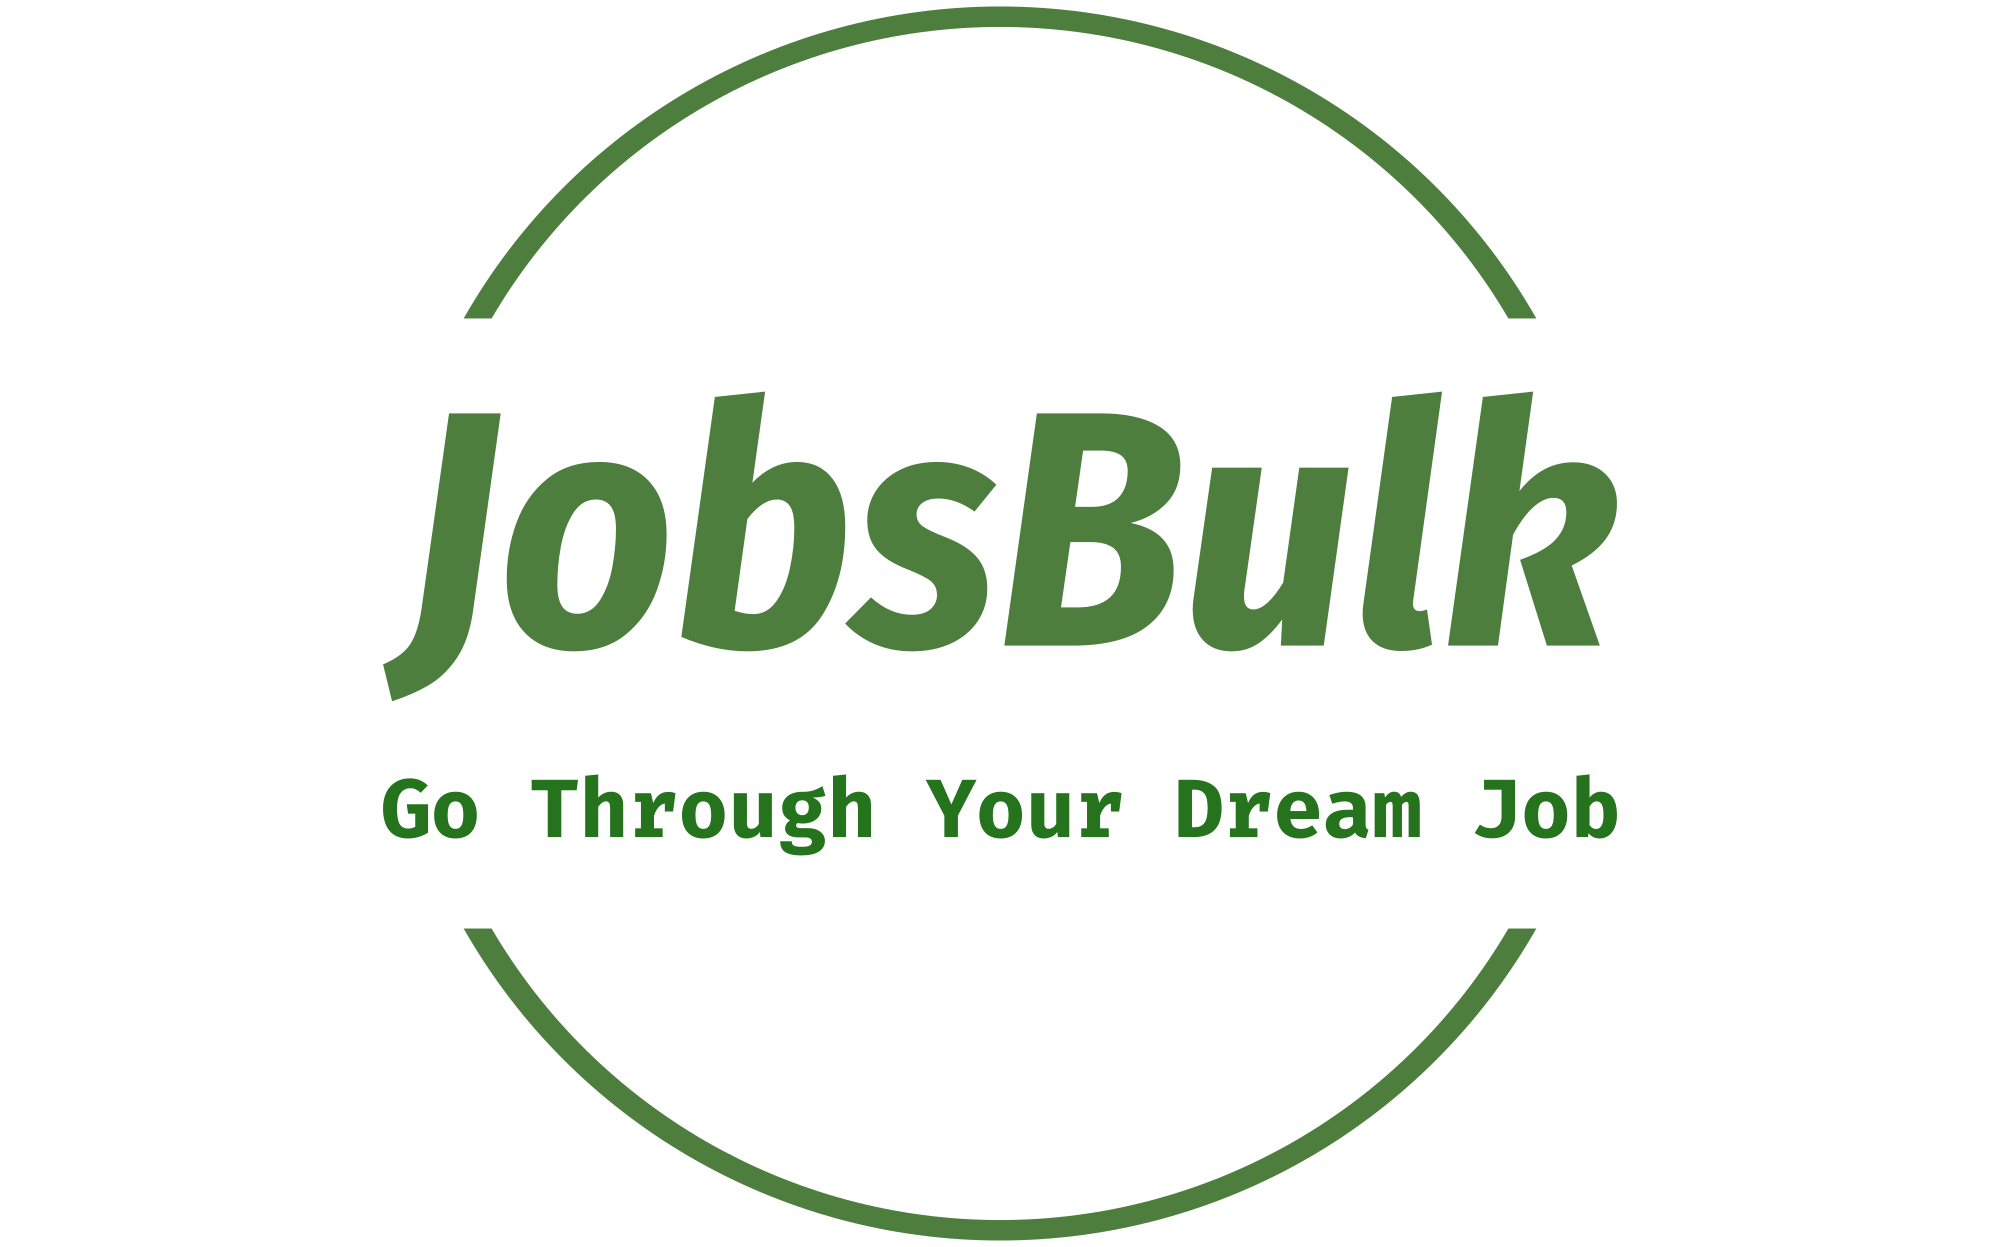 Jobsbulk.com